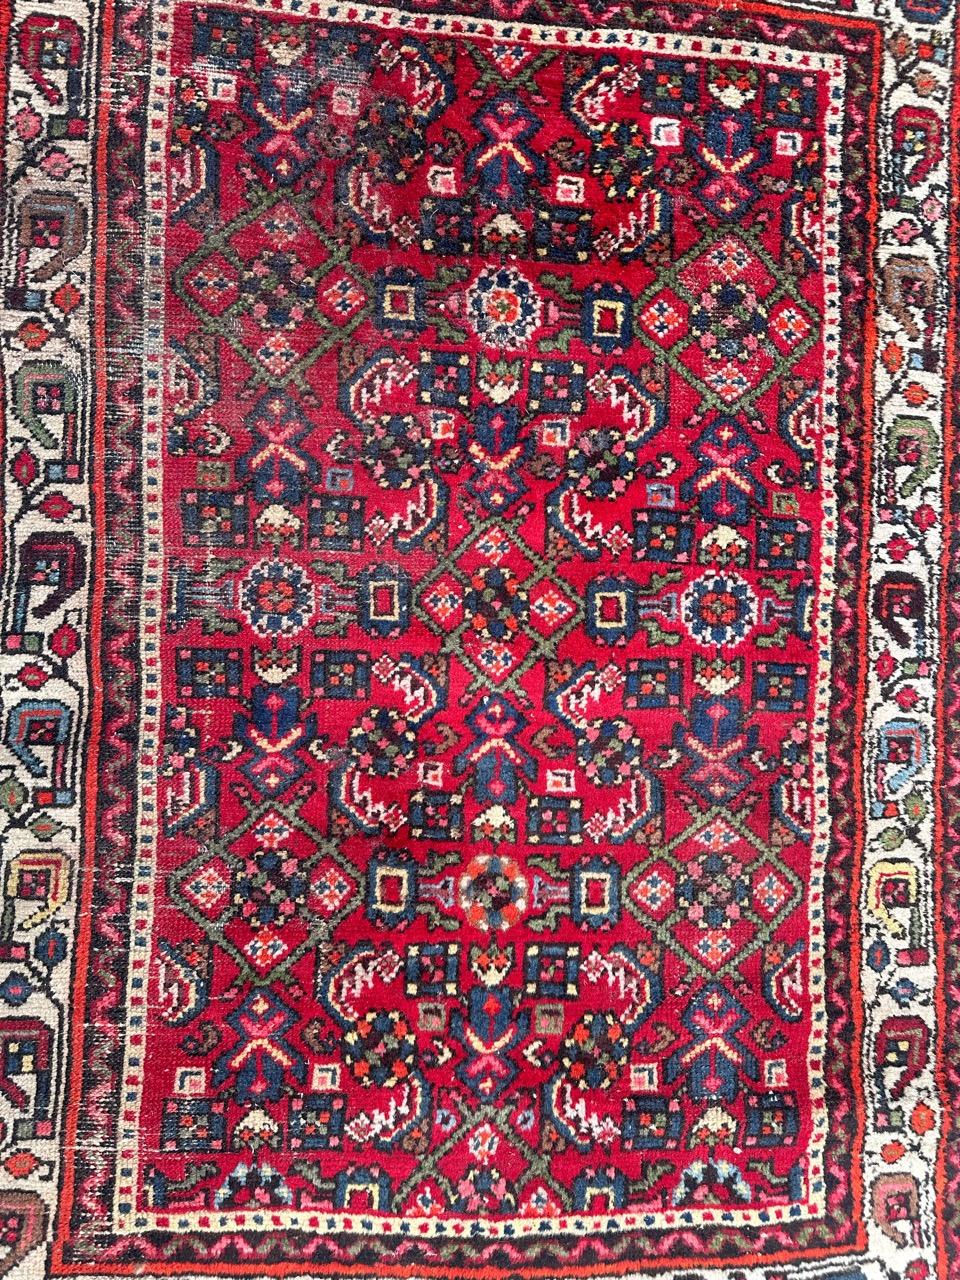 Schöner rustikaler Hamadan-Teppich aus der Mitte des 20. Jahrhunderts mit schönen geometrischen und stilisierten Mustern und schönen Farben mit rotem Hintergrund und grün, blau, gelb, rosa, lila, braun und weiß, komplett handgeknüpft mit Wolle auf